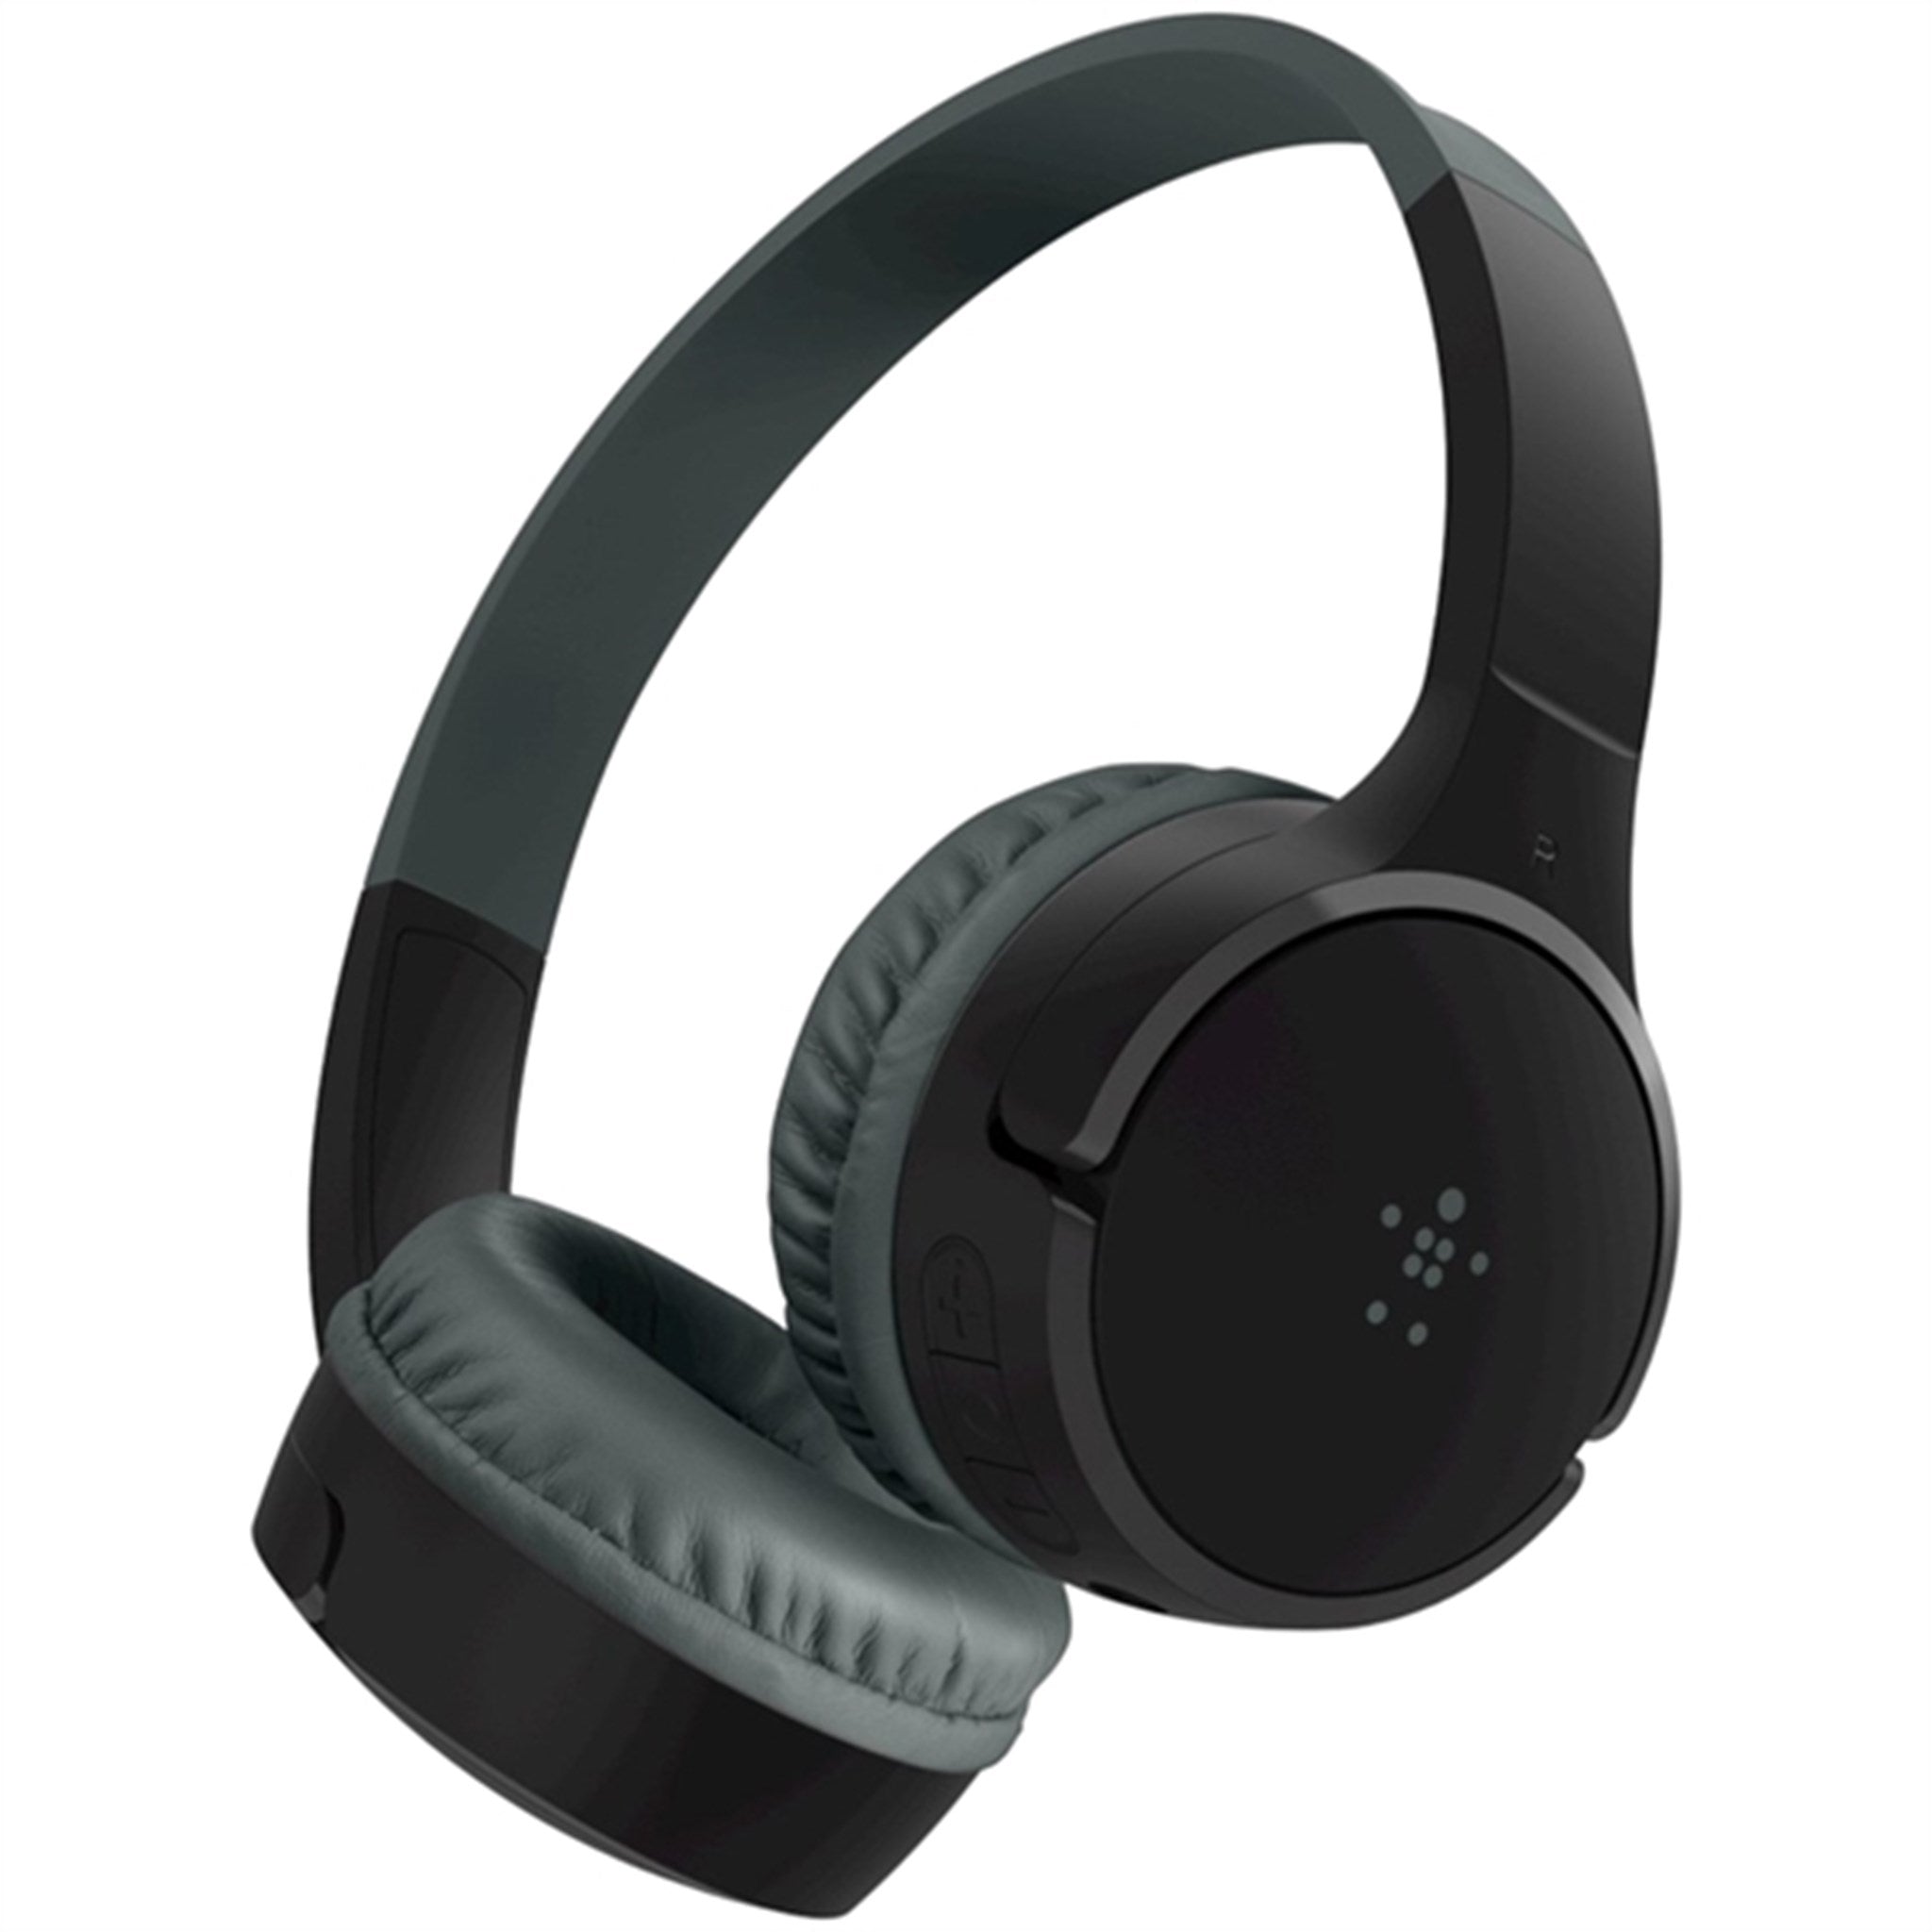 Belkin SOUNDFORM Mini Wireless On-Ear Headphones Black 2